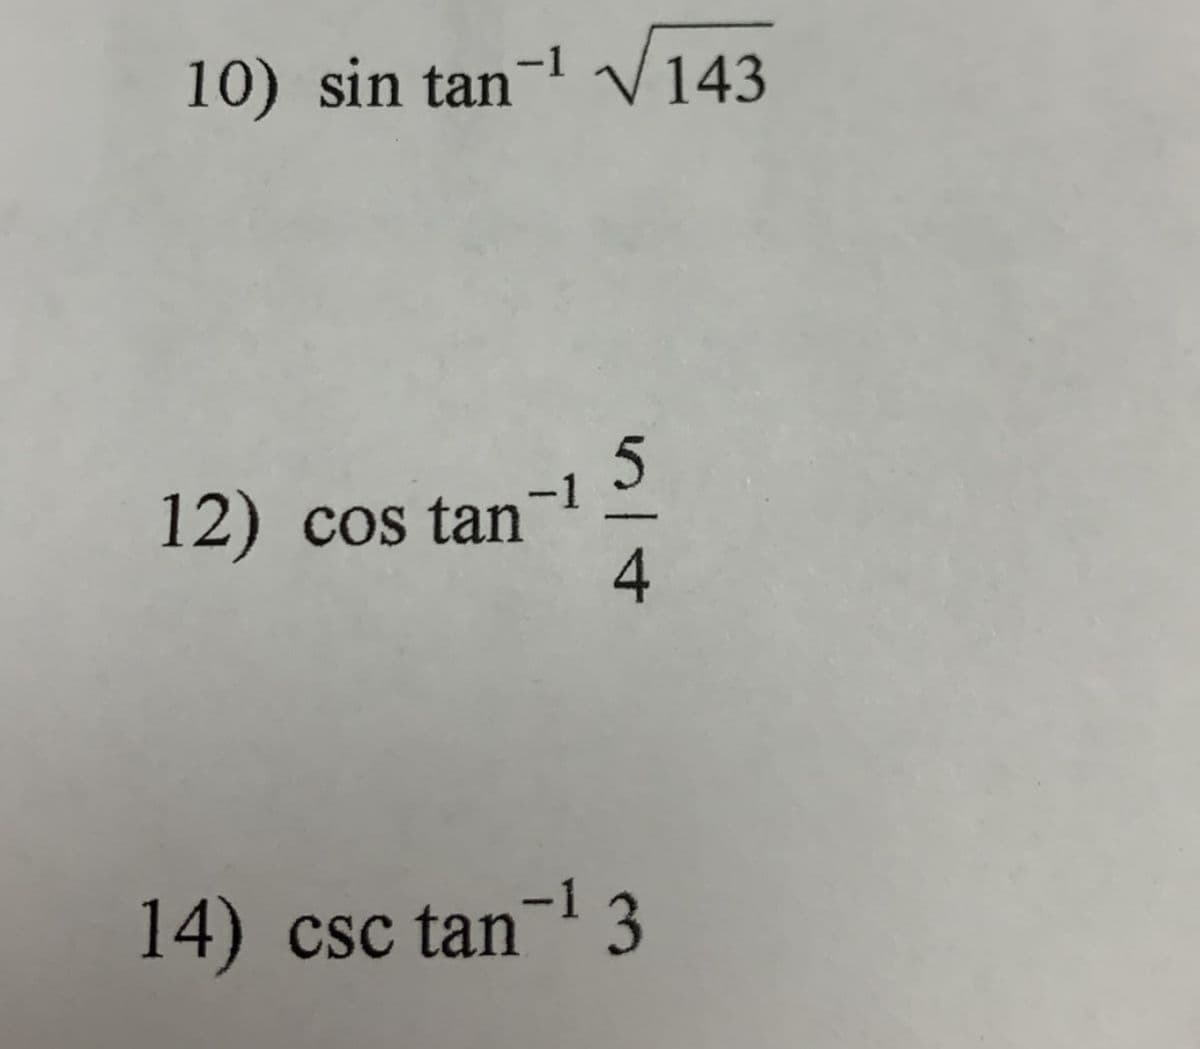 10) sin tan- V143
-1
12) cos tan
4
14) csc tan-1 3
